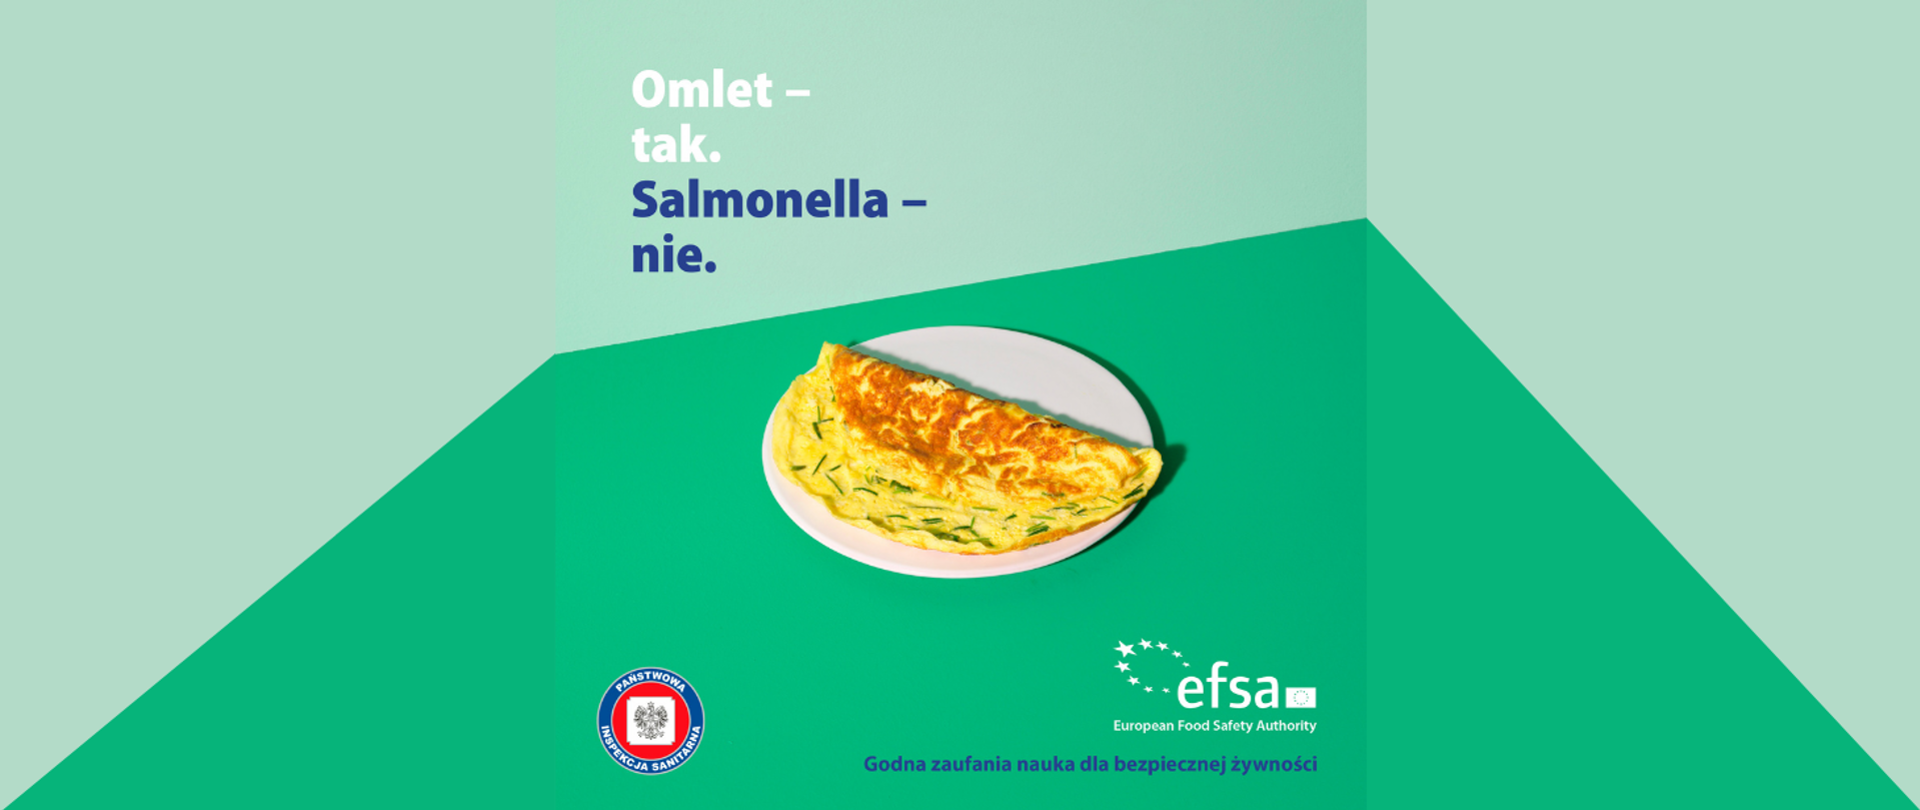 Bezpieczne rozmrażanie żywności - omlet na talerzu, napis: Omlet - tak. Salmonella-nie.